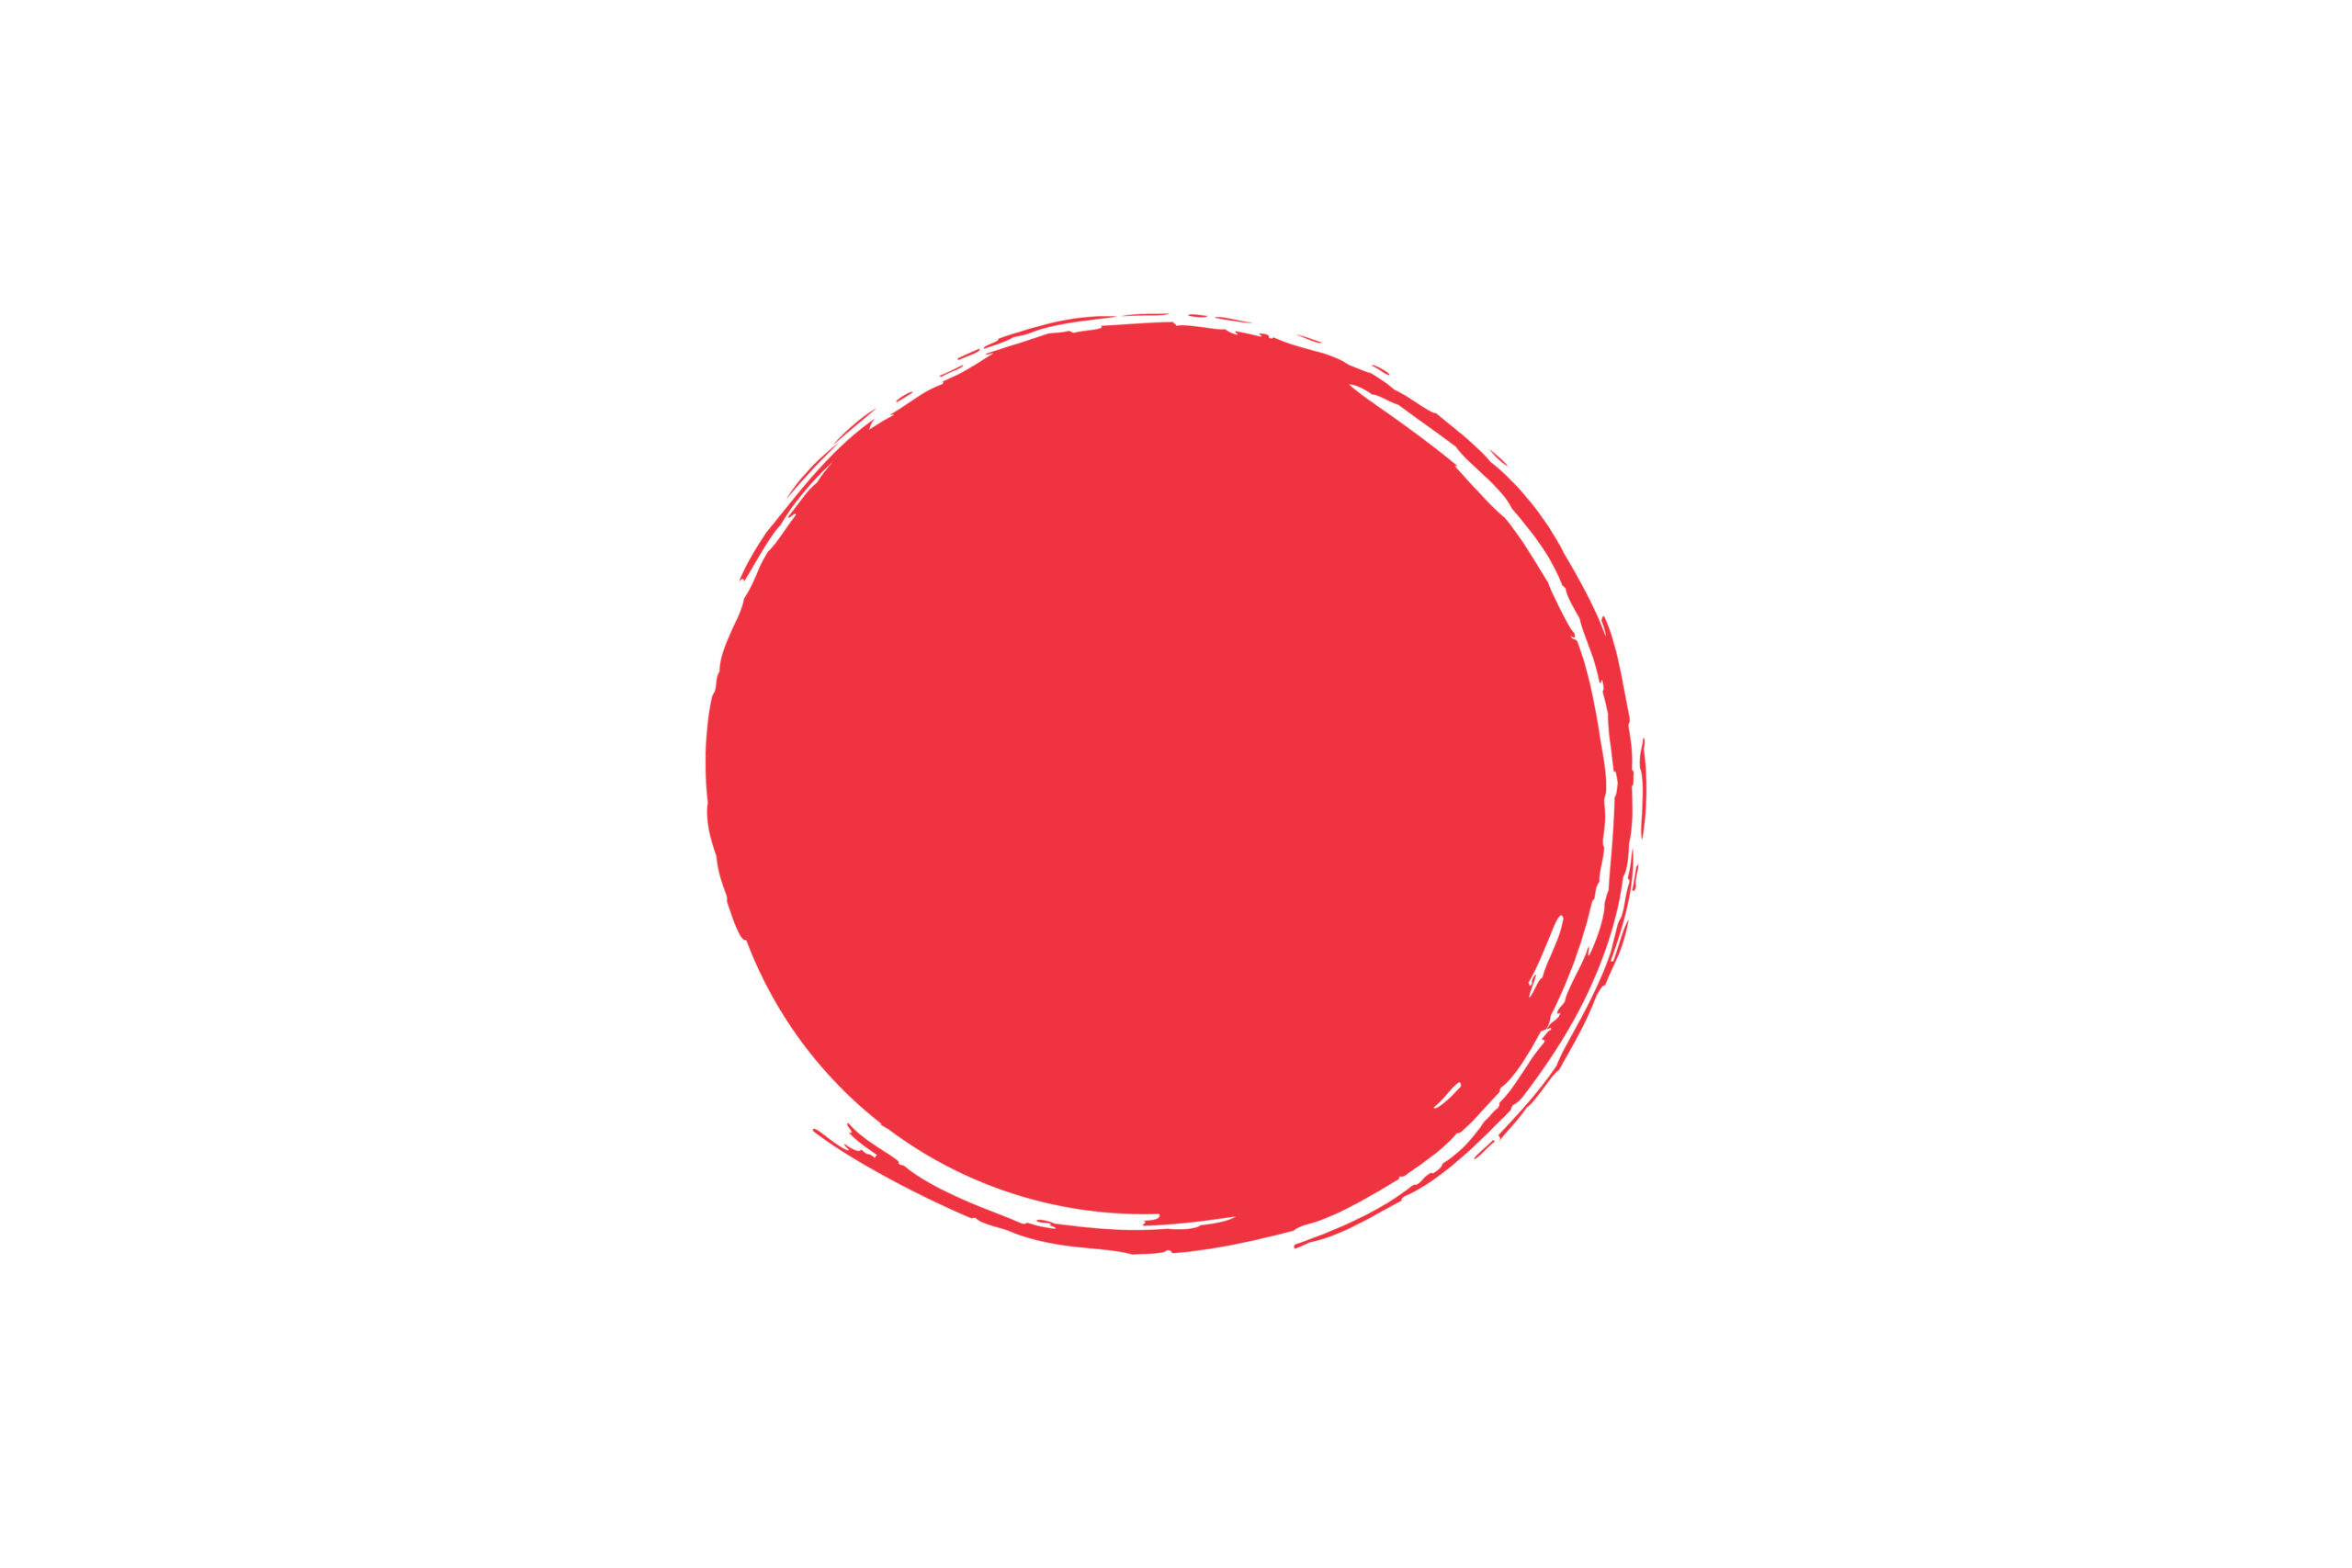 seleccion de japon y su bandera